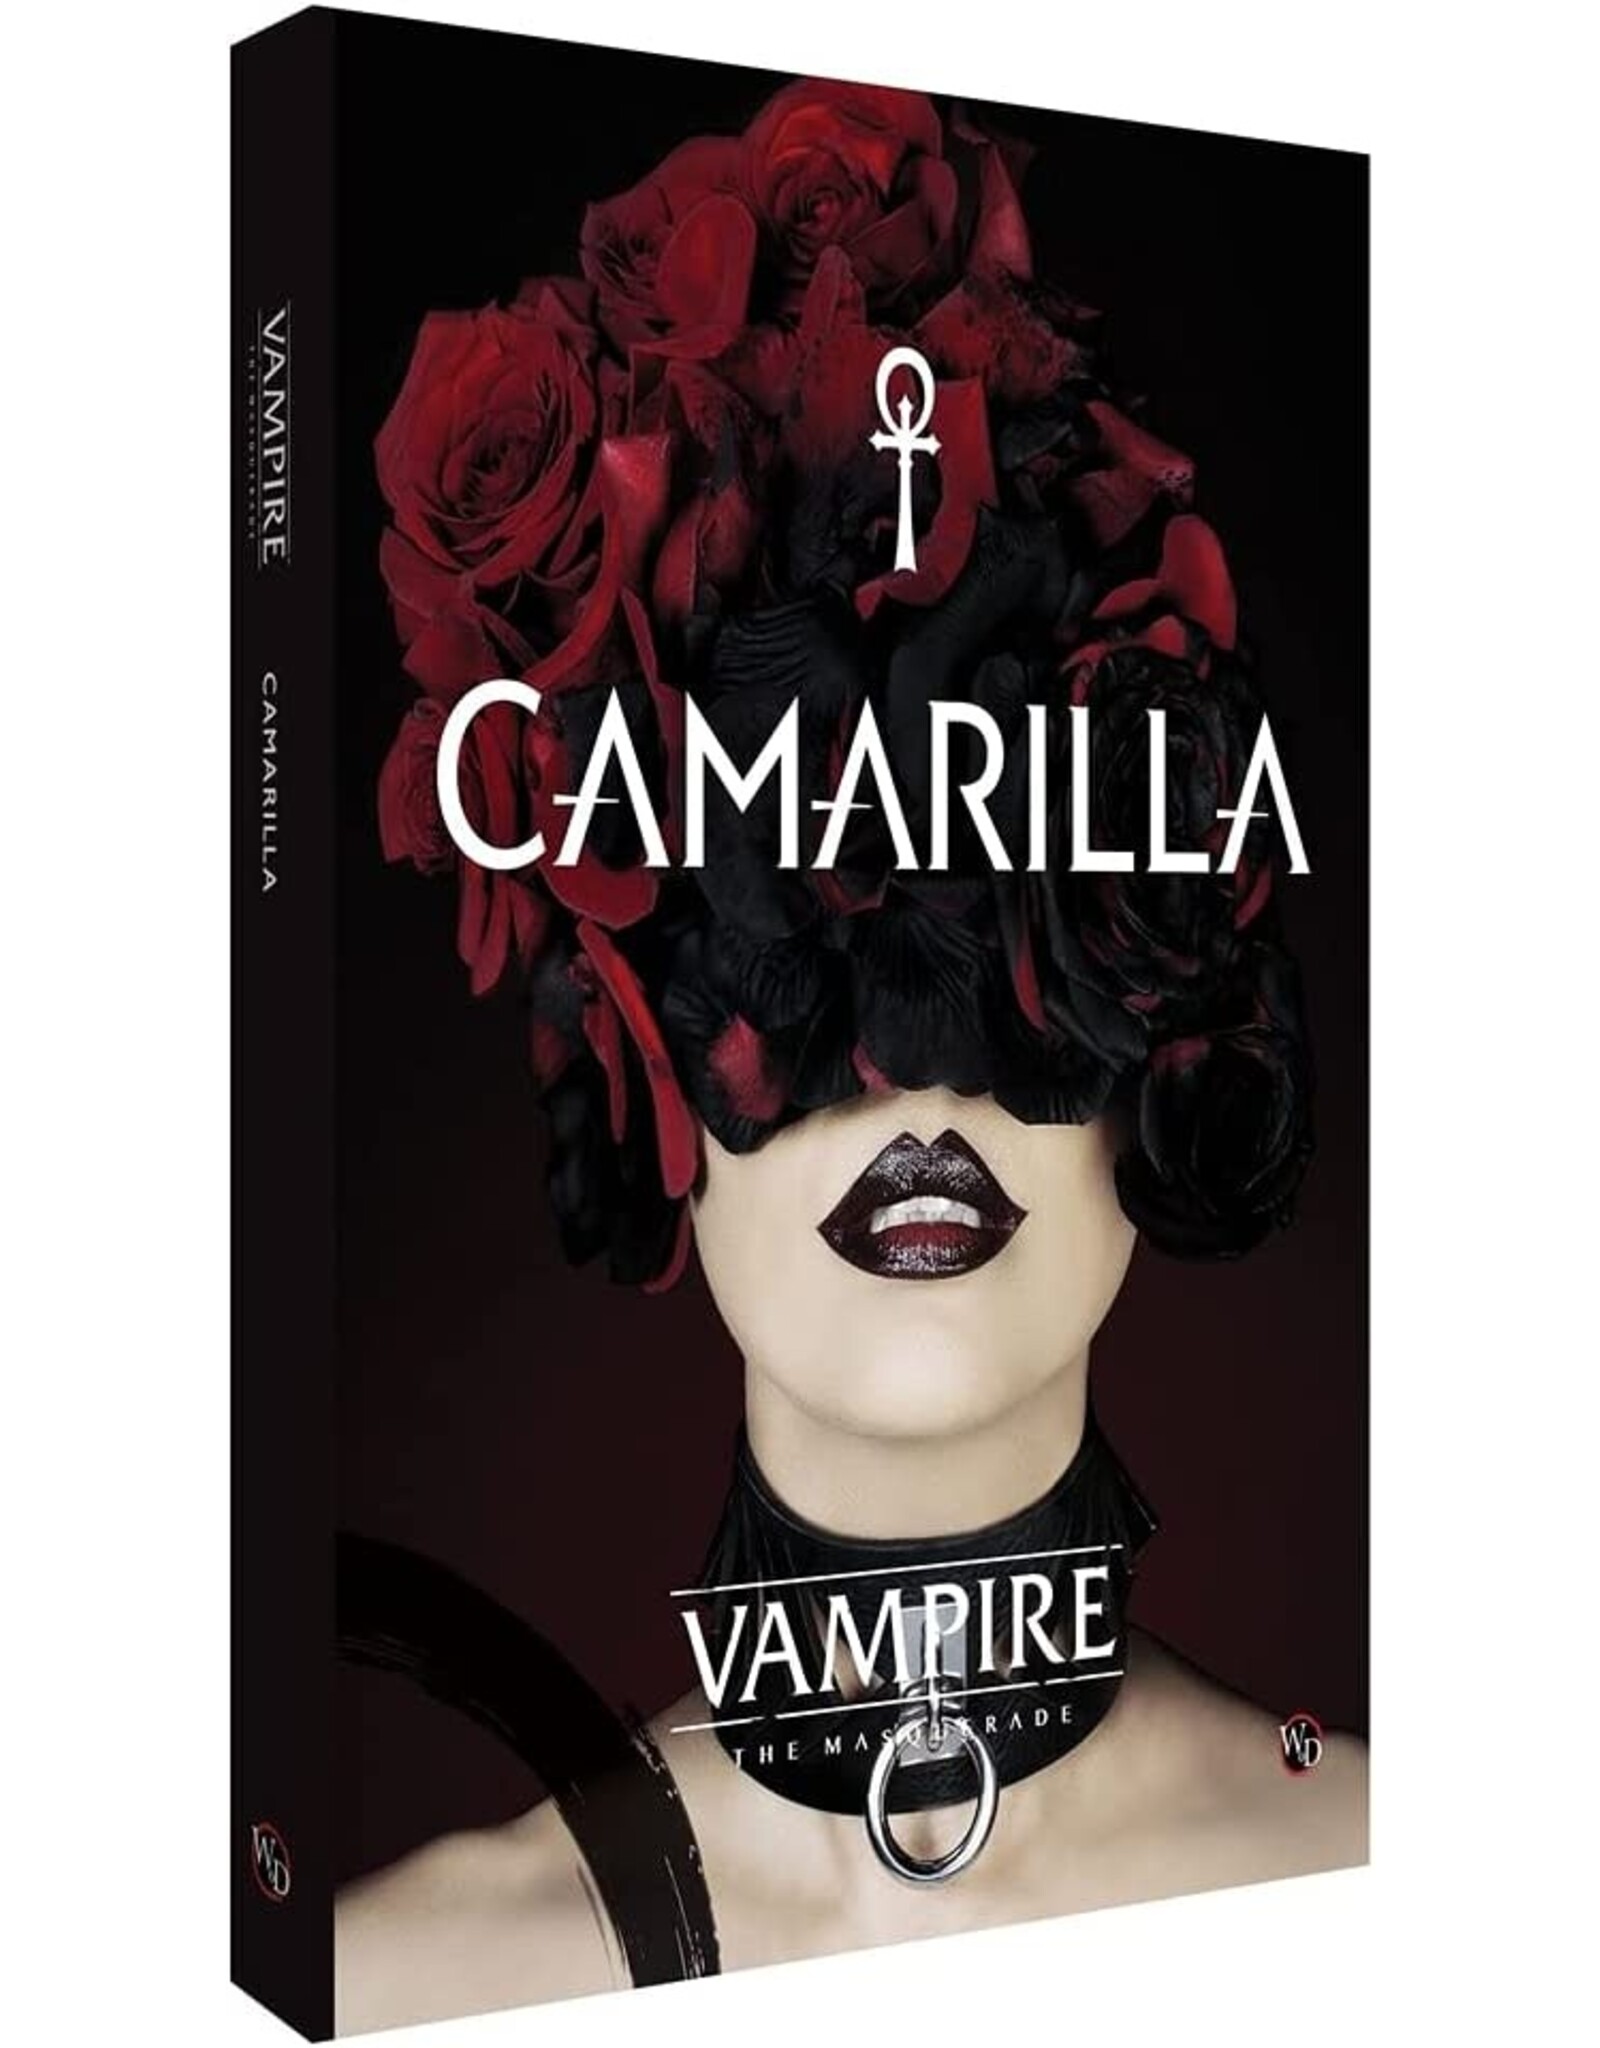 Vampire The Masquerade Vampire The Masquerade: Camarilla Sourcebook